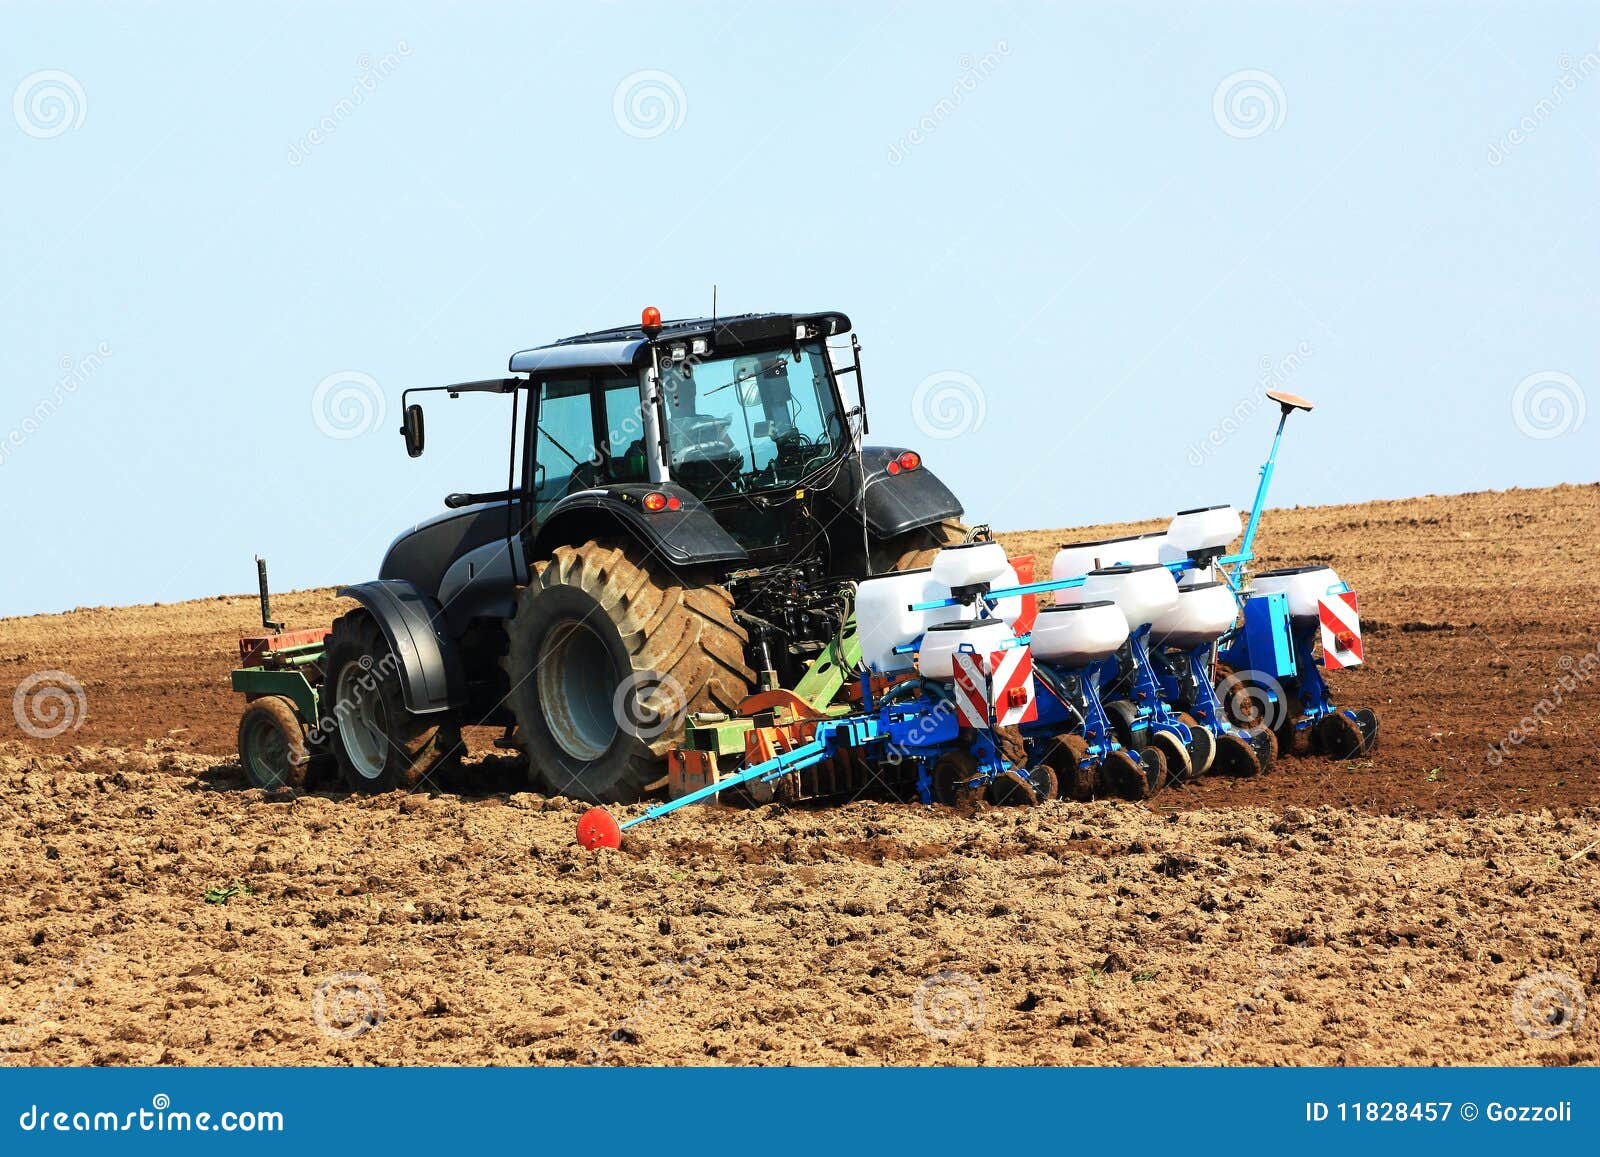 Piantatura del raccolto. Un coltivatore utilizza un trattore con un'unità di lavorazione e di piantatura per piantare il raccolto di estate in un campo recentemente arato.